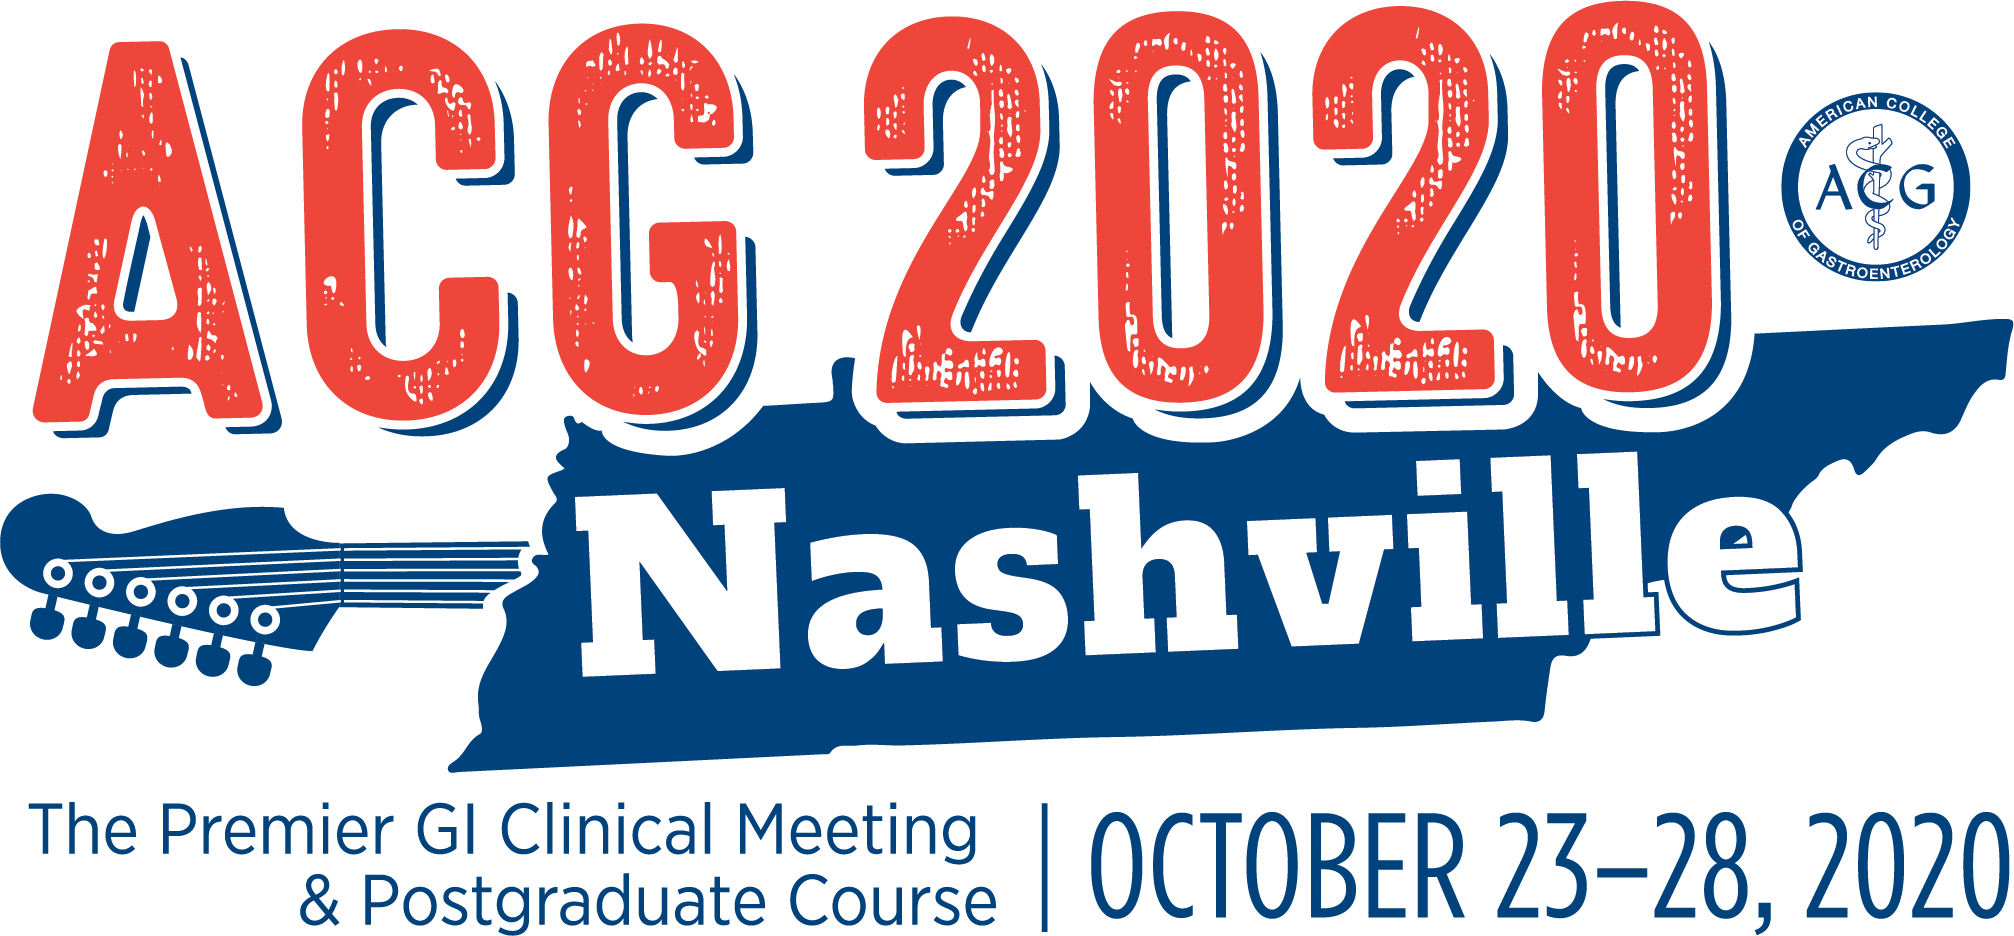 Acg Annual Meeting 2023 2023 Calendar